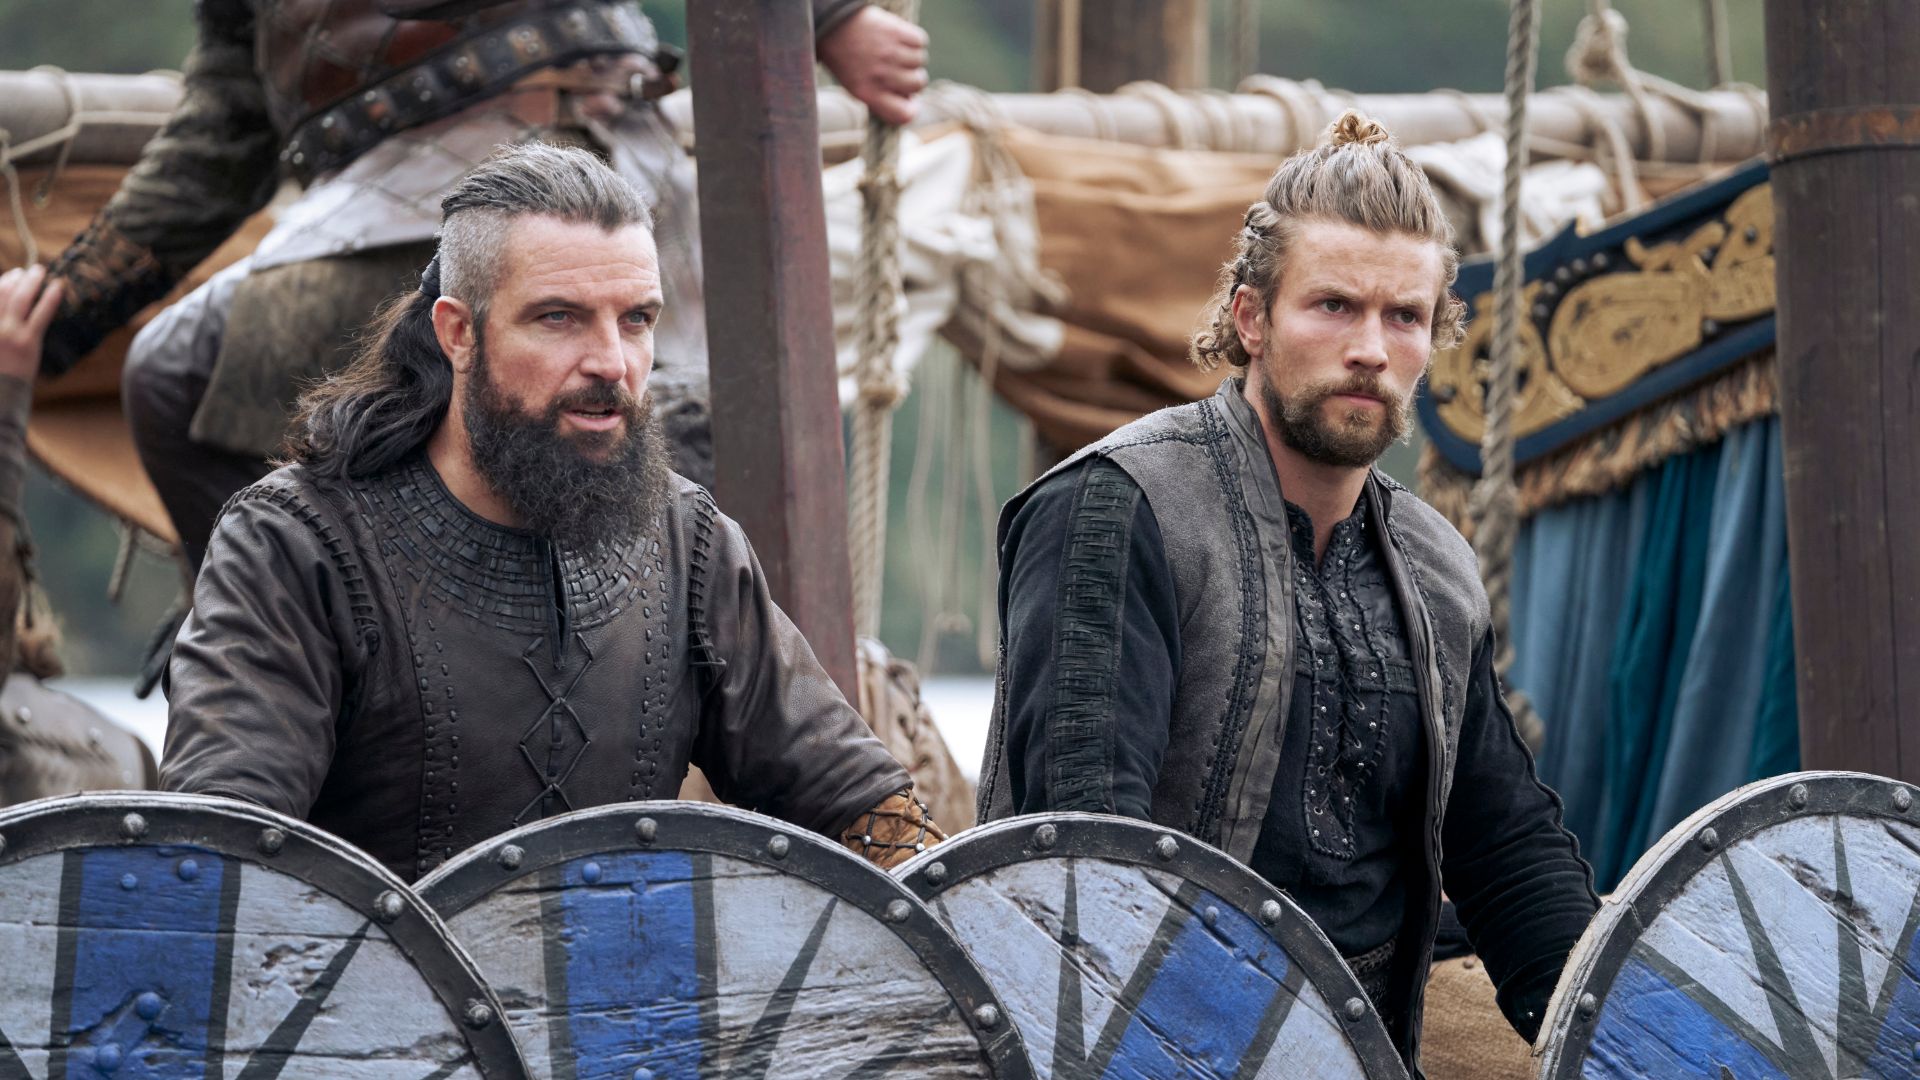 Série Vikings Valhalla é spin-off da popular série com Ragnar